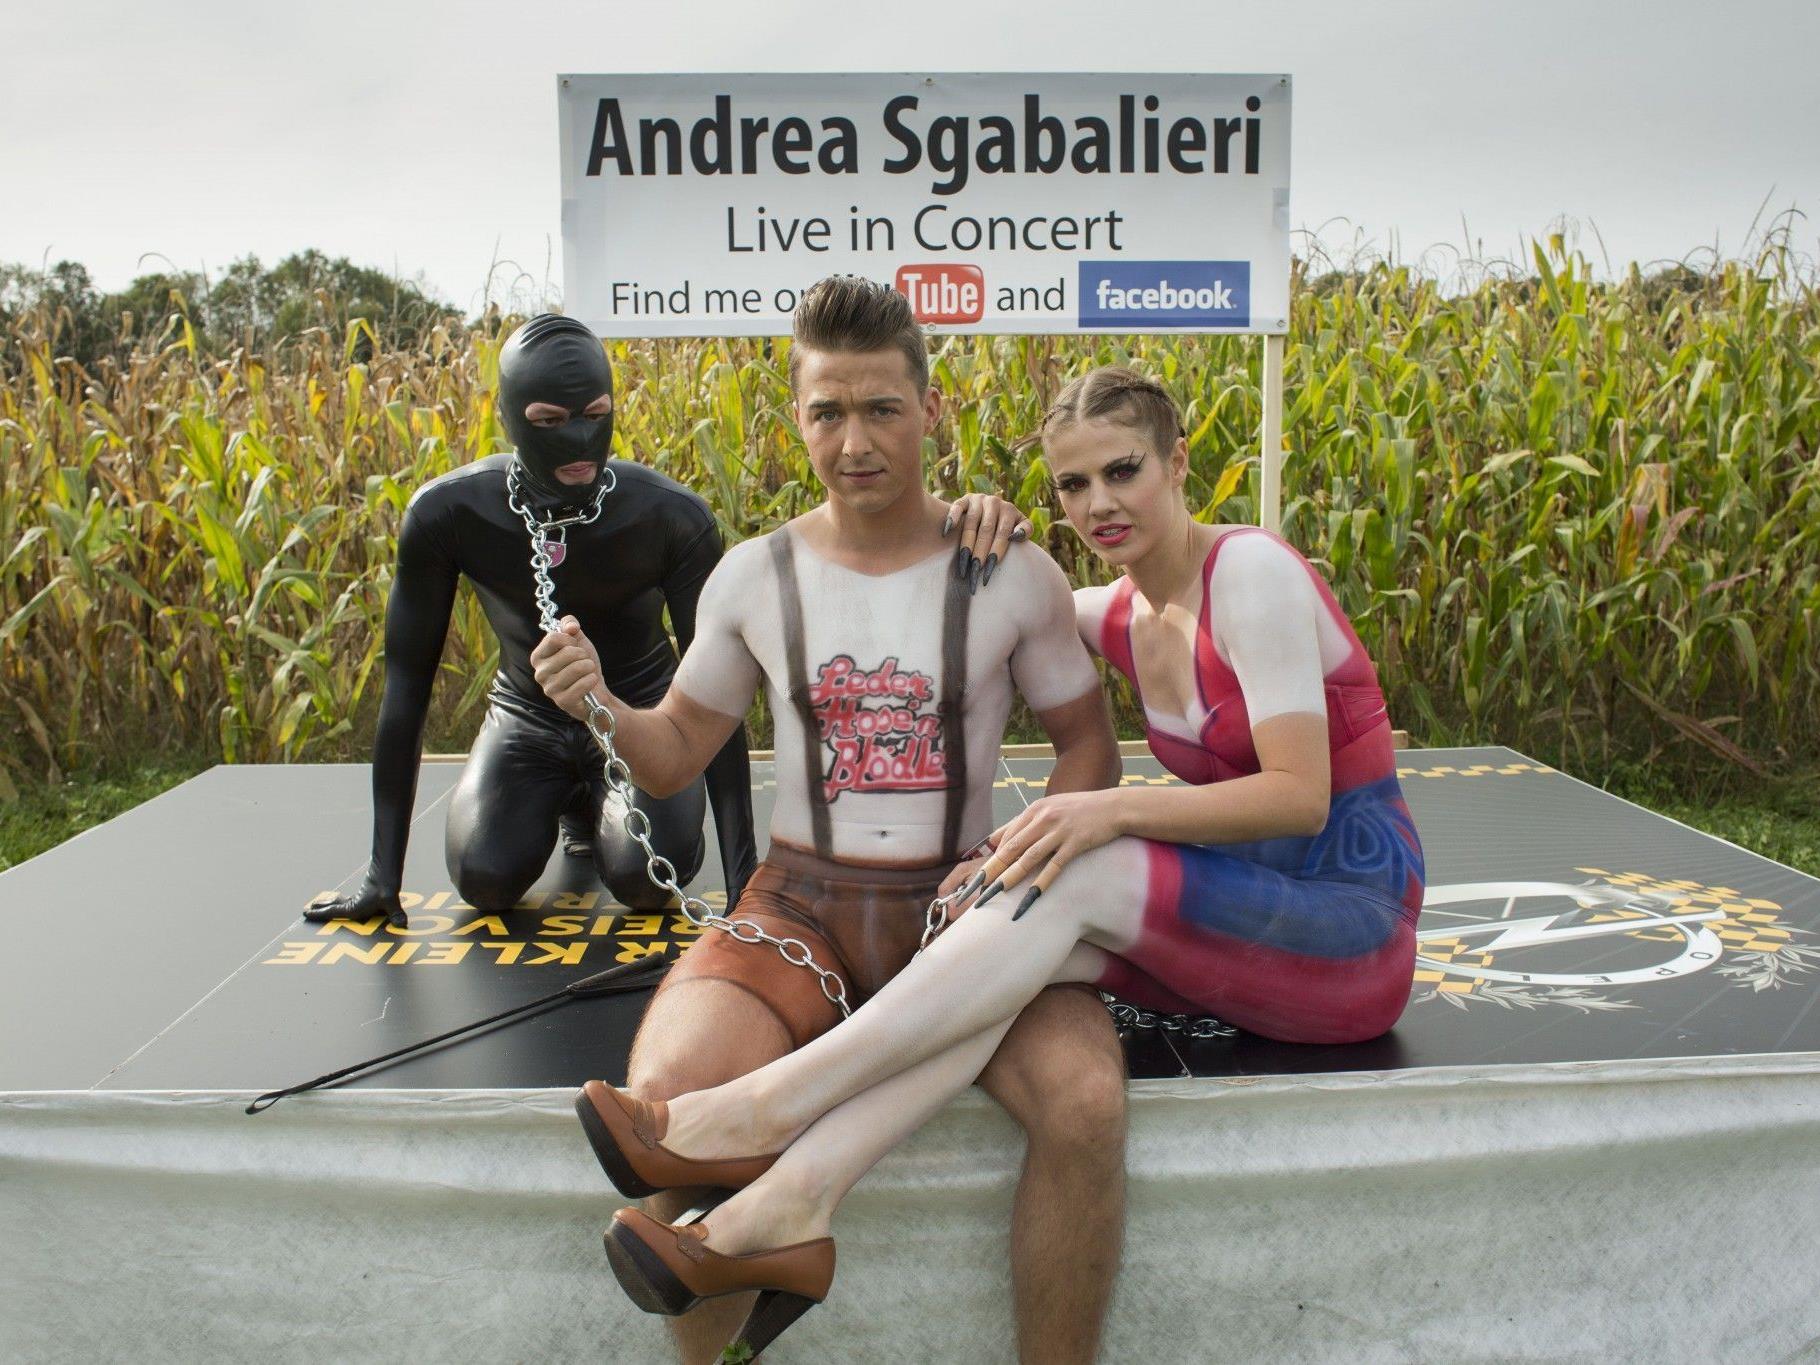 Das verrückte Groupie alias Susi Moll und "Mr. Nice" Andrea Sgabalieri beim Video-Dreh.